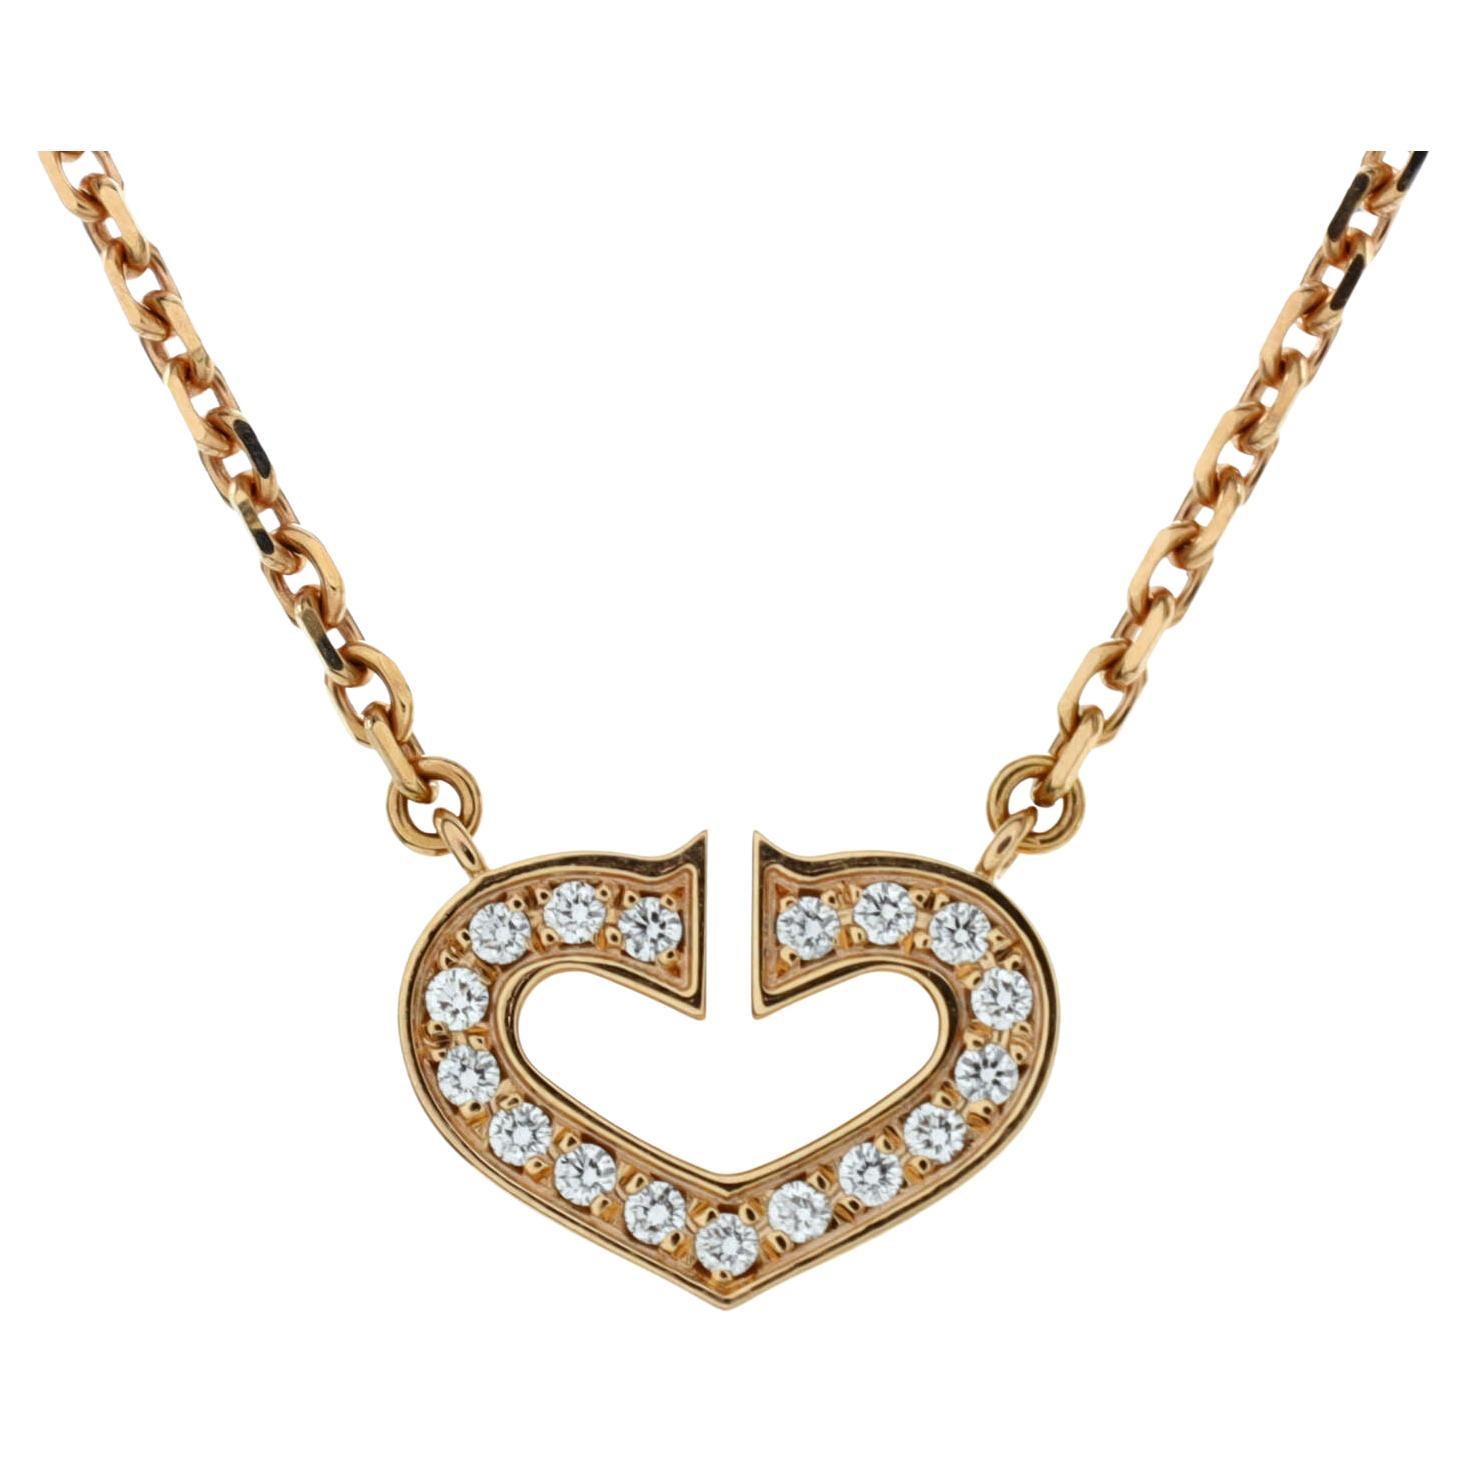 Cartier C Heart de Cartier Pendant Necklace 18k Rose Gold with Pave Diamonds